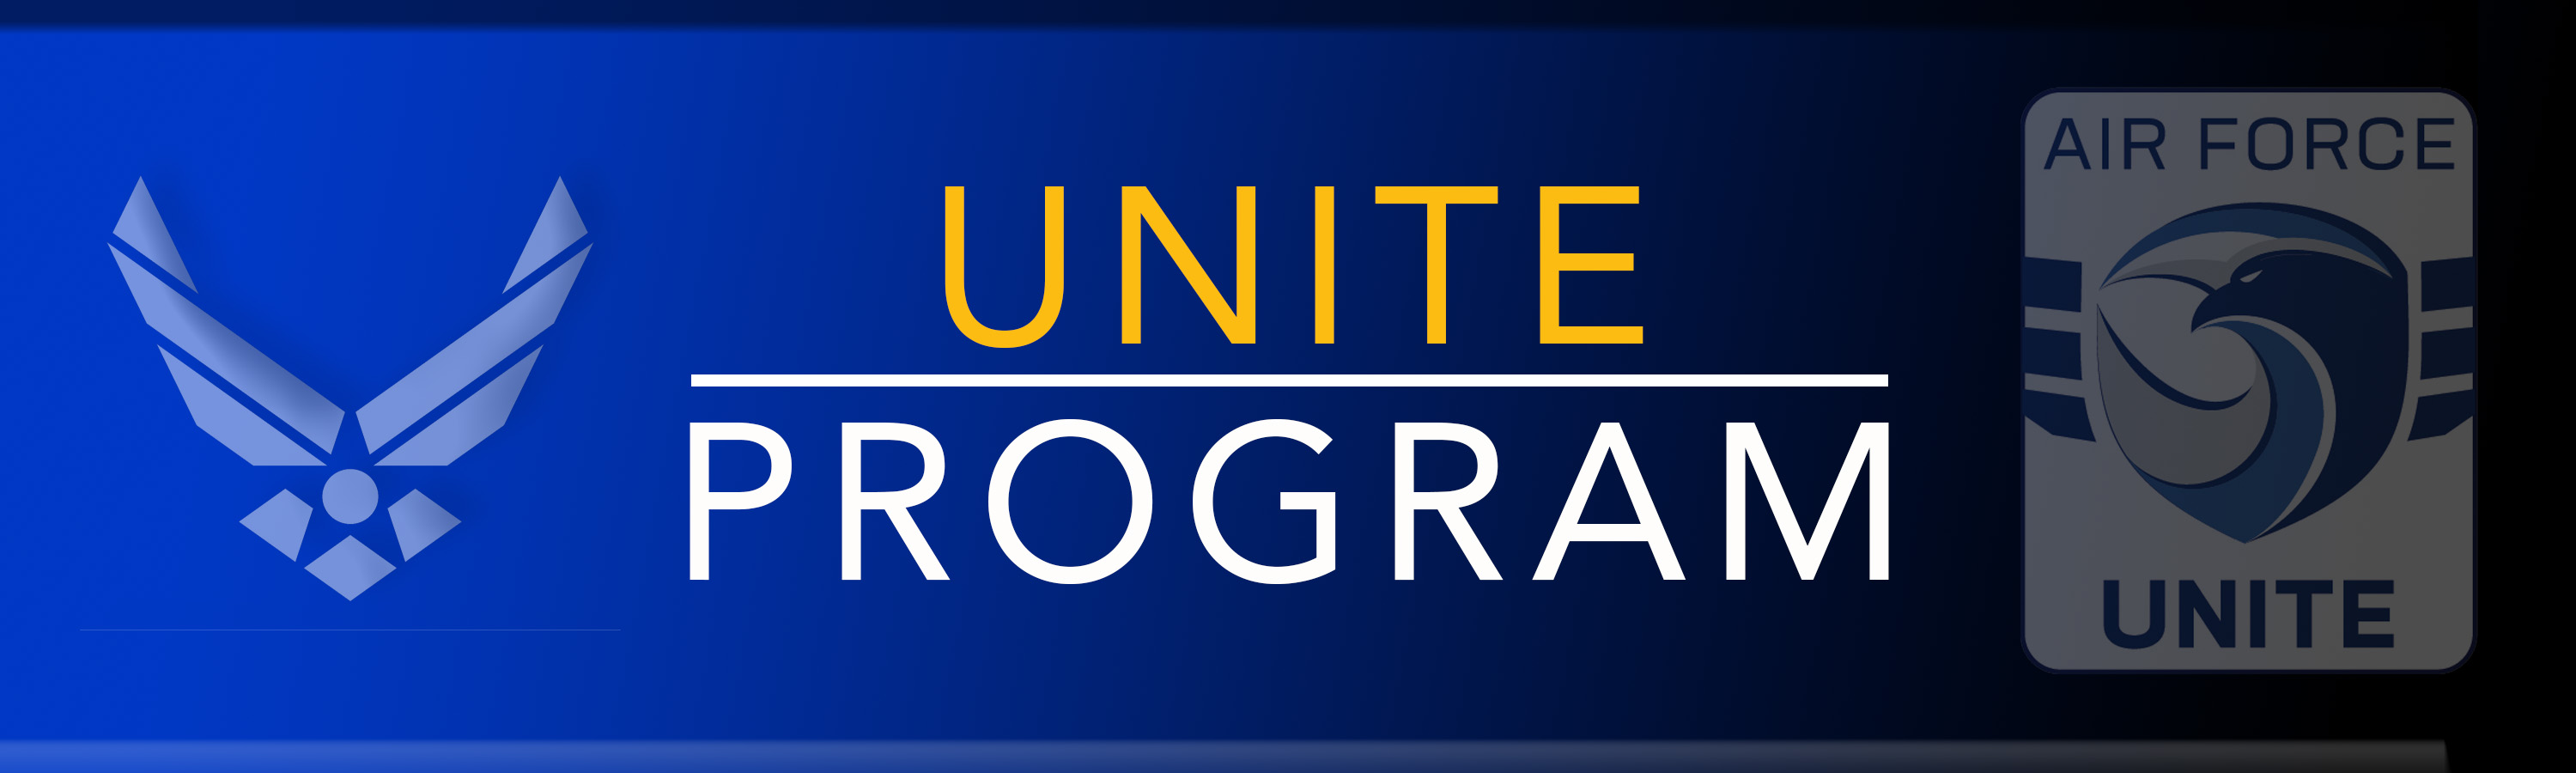 UNITE Program Banner